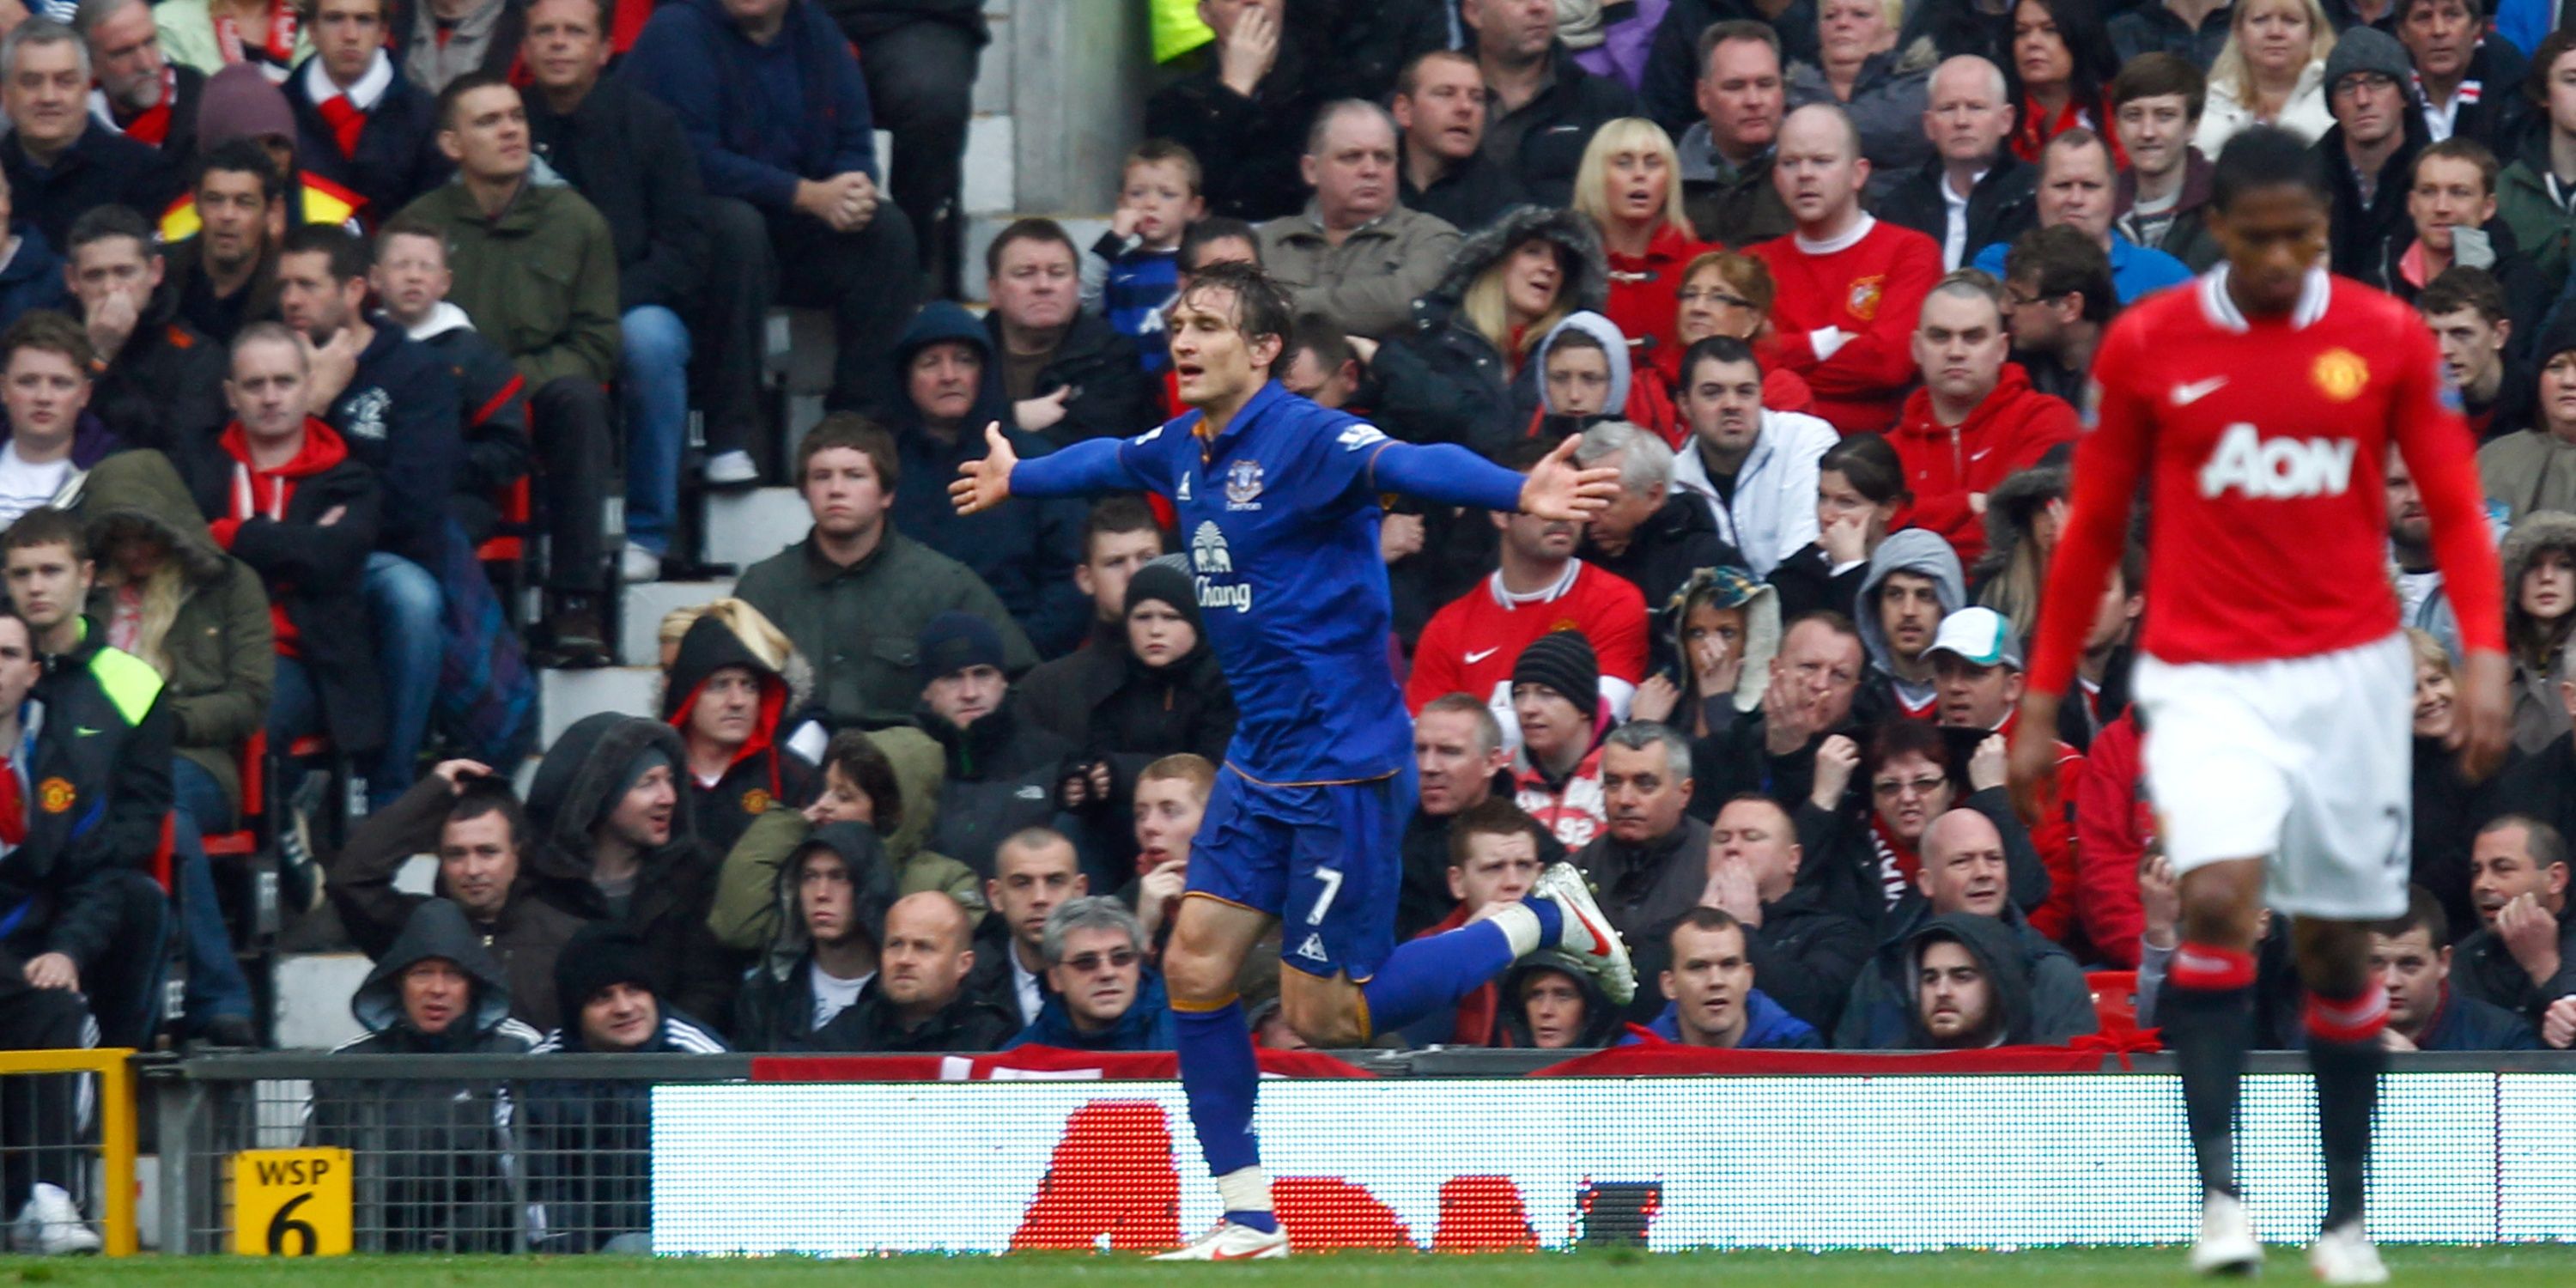 Everton's Nikica Jelavic celebrates scoring against Manchester United. 